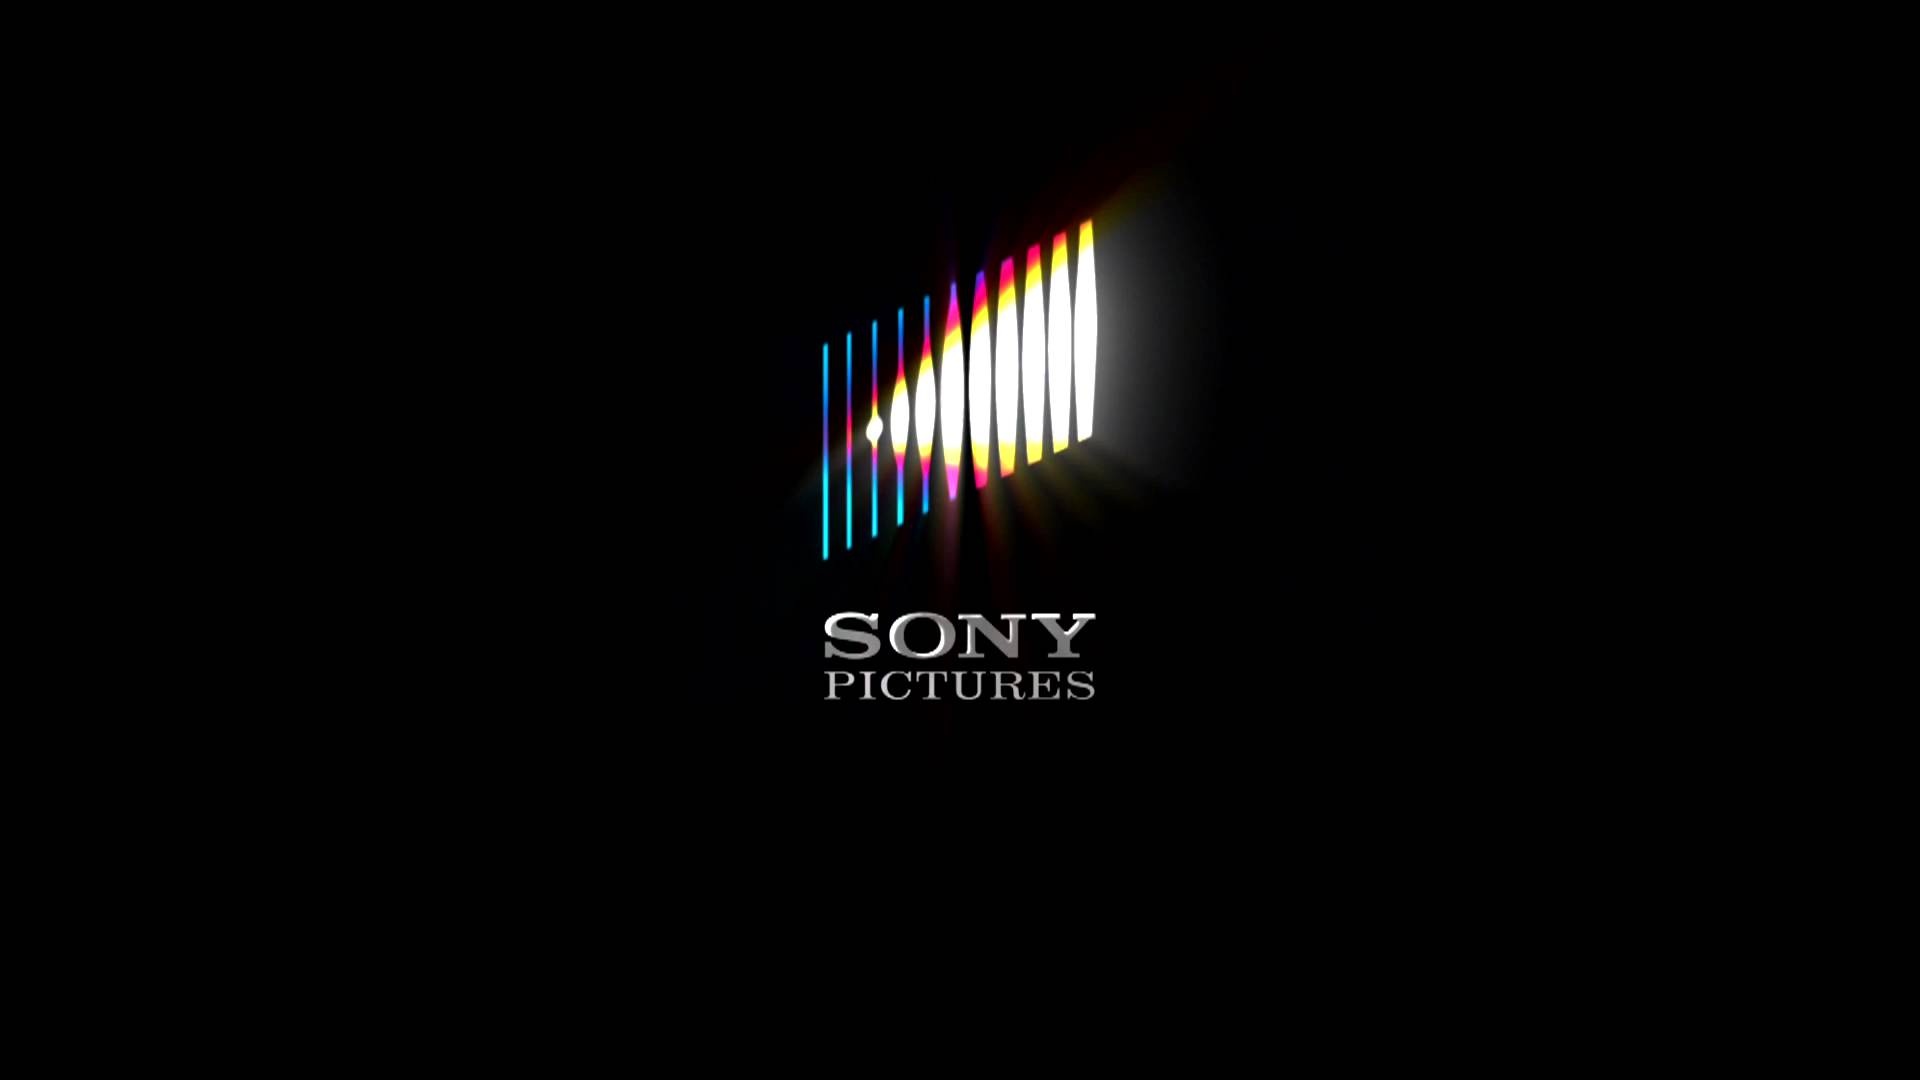 Sony pictures. Sony Кинокомпания. Sony pictures логотип. Студия Sony pictures.